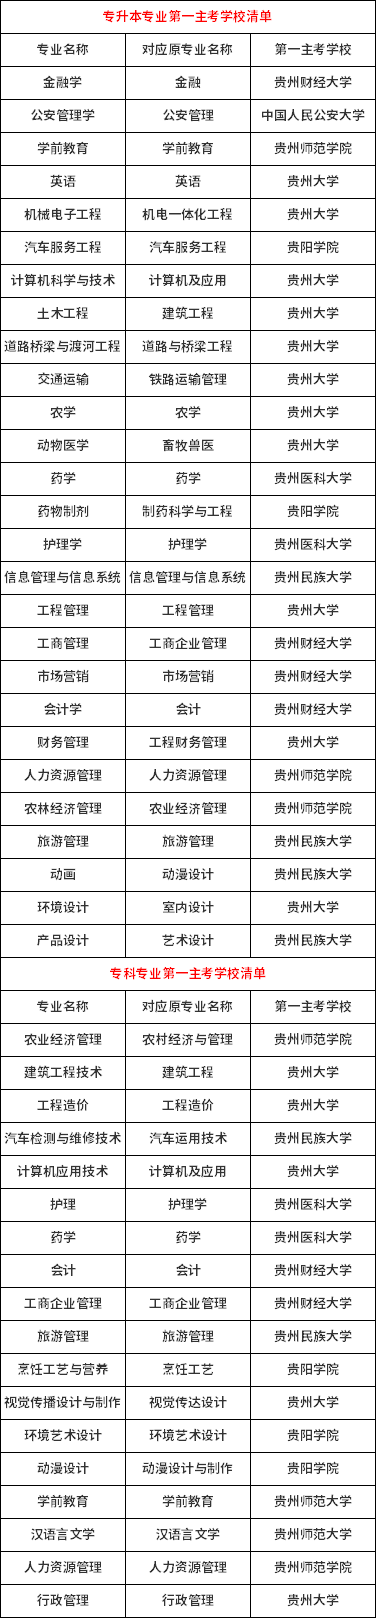 贵州省高等教育自学考试专科、专升本专业第一主考学校清单